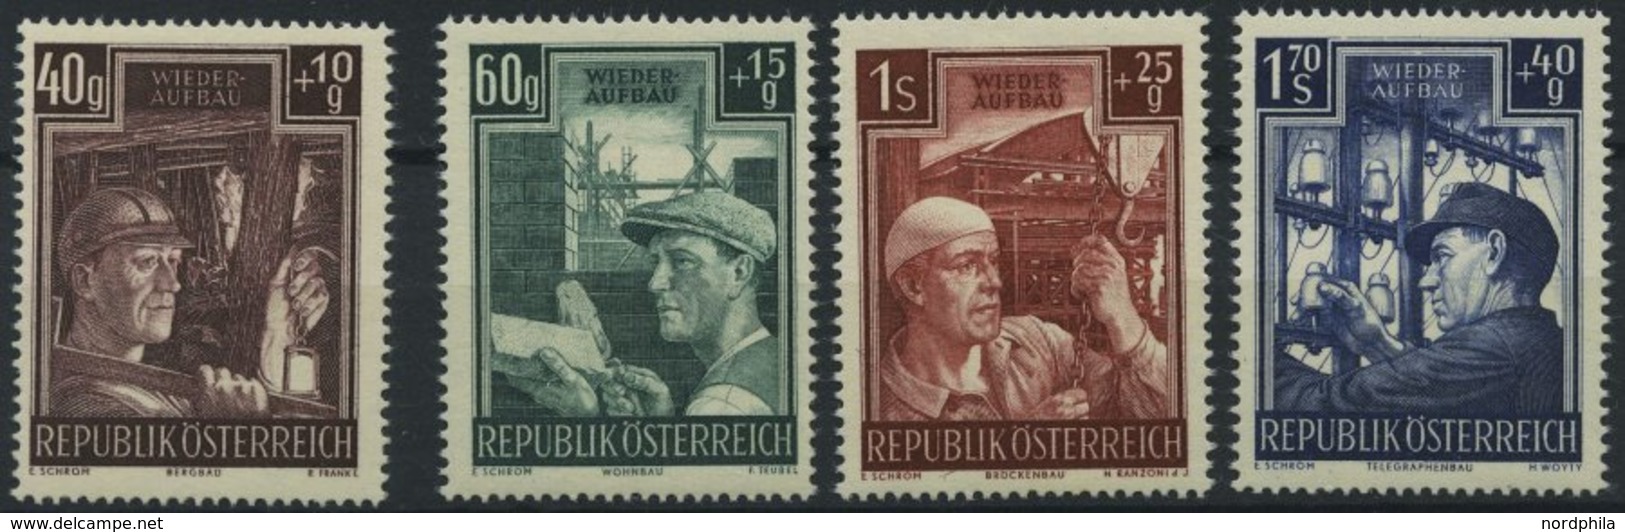 ÖSTERREICH 960-63 **, 1951, Wiederaufbau, Prachtsatz, Mi. 80.- - Usati